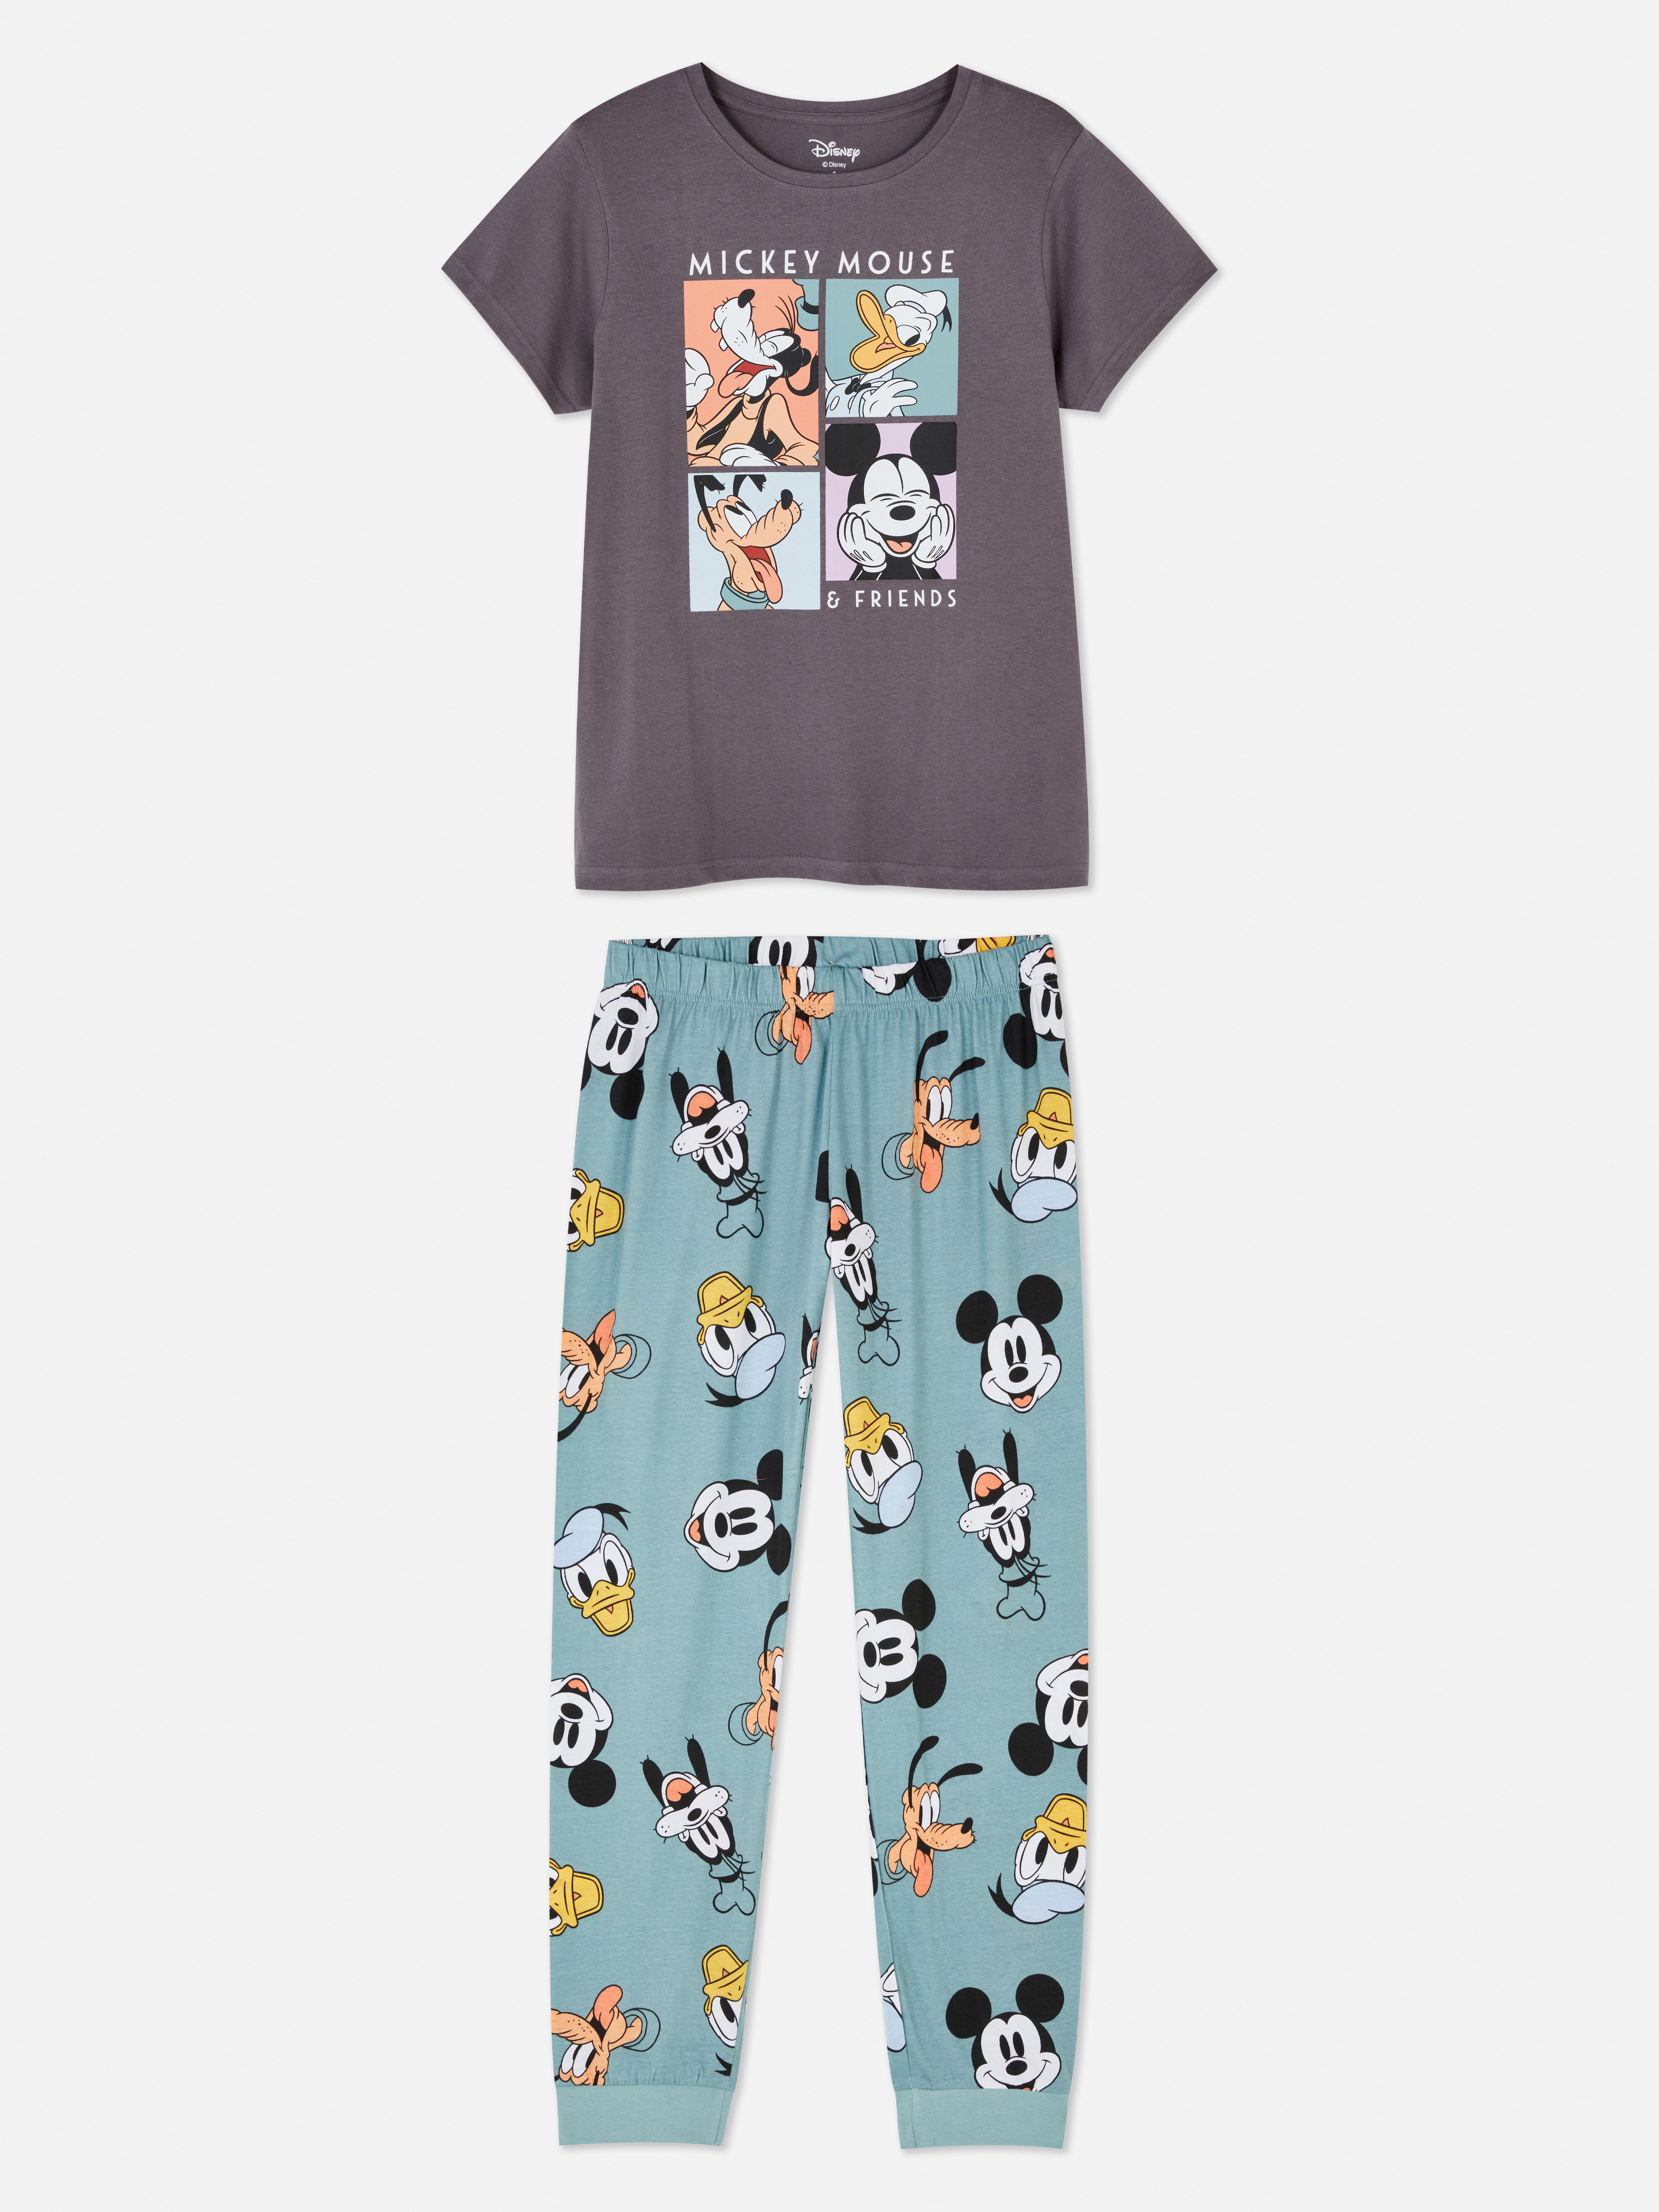 Hubert Hudson Creo que Comorama Pijama de manga corta con collage de Mickey Mouse y sus amigos de Disney |  Pijama para mujer | Pijamas para mujer | Ropa para mujer | Nuestra línea de  moda femenina 